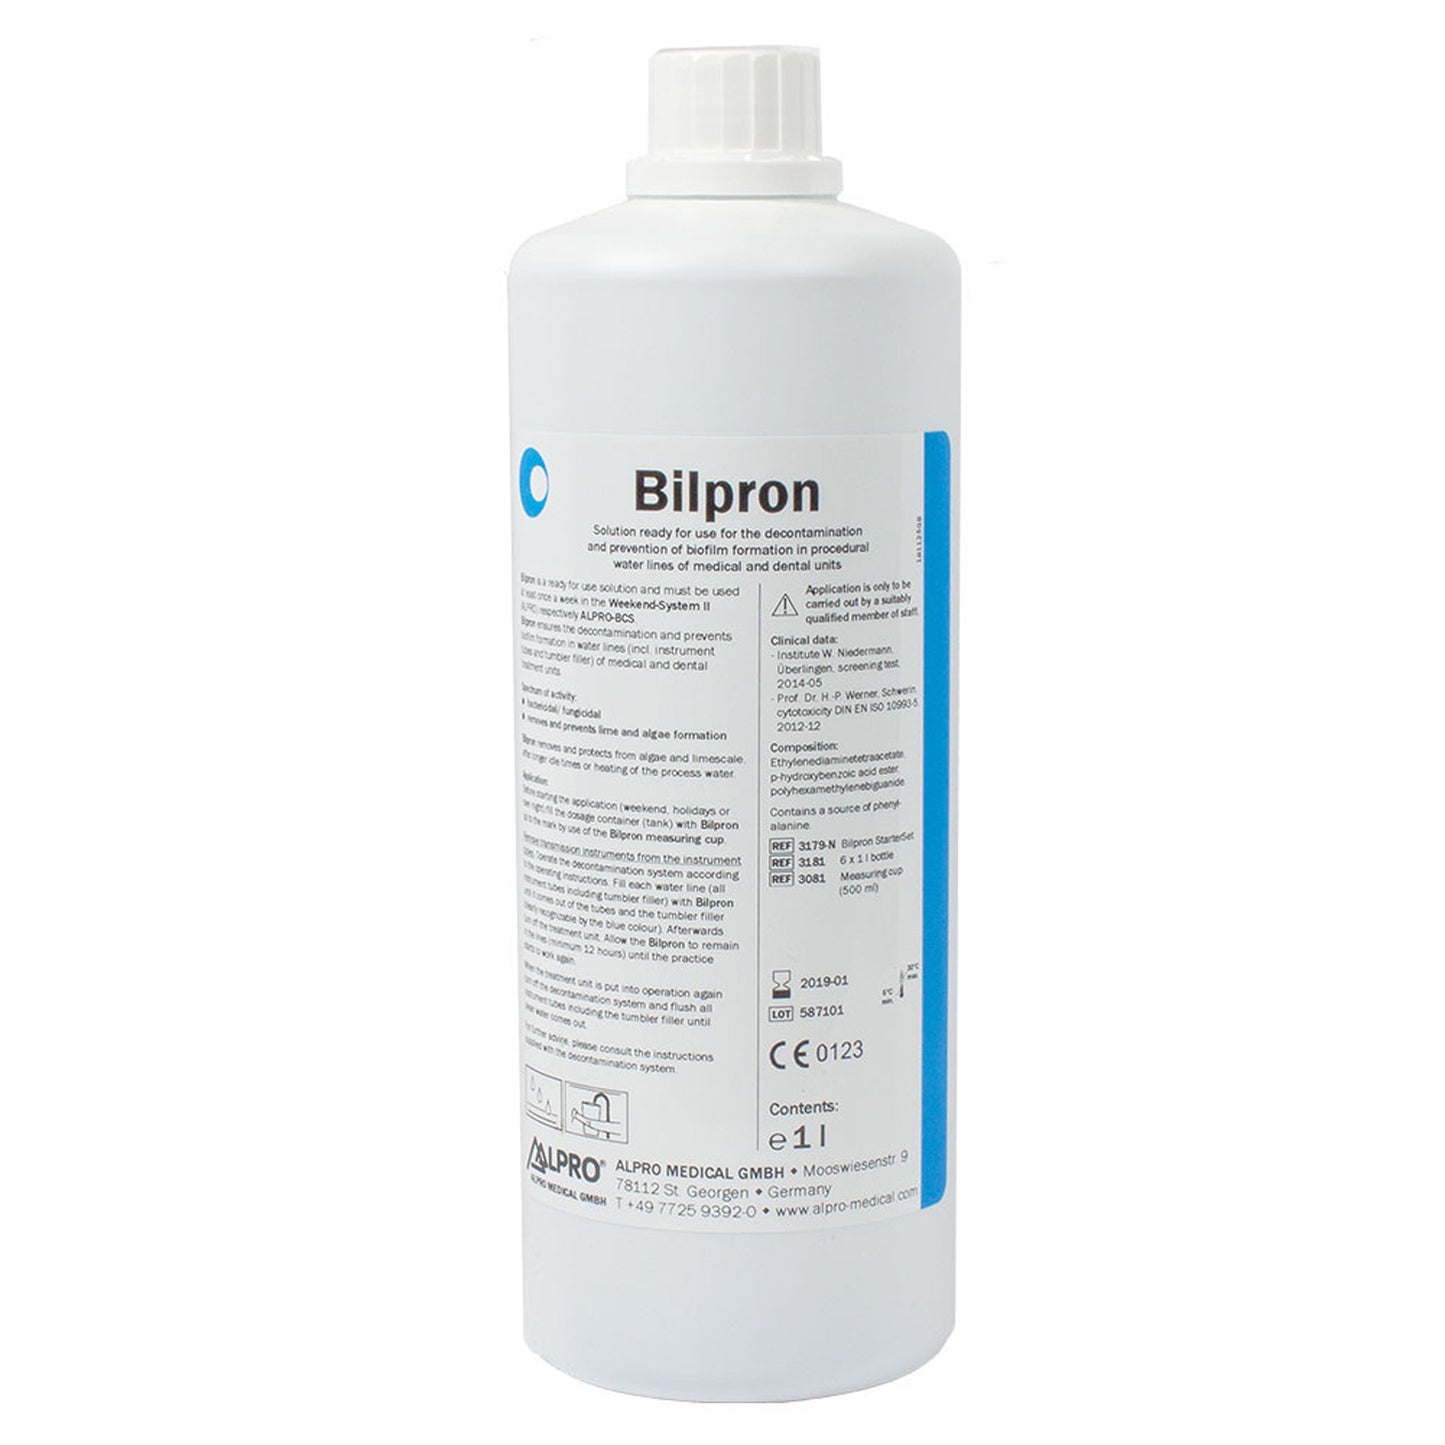 Bilpron Waterline Disinfectant